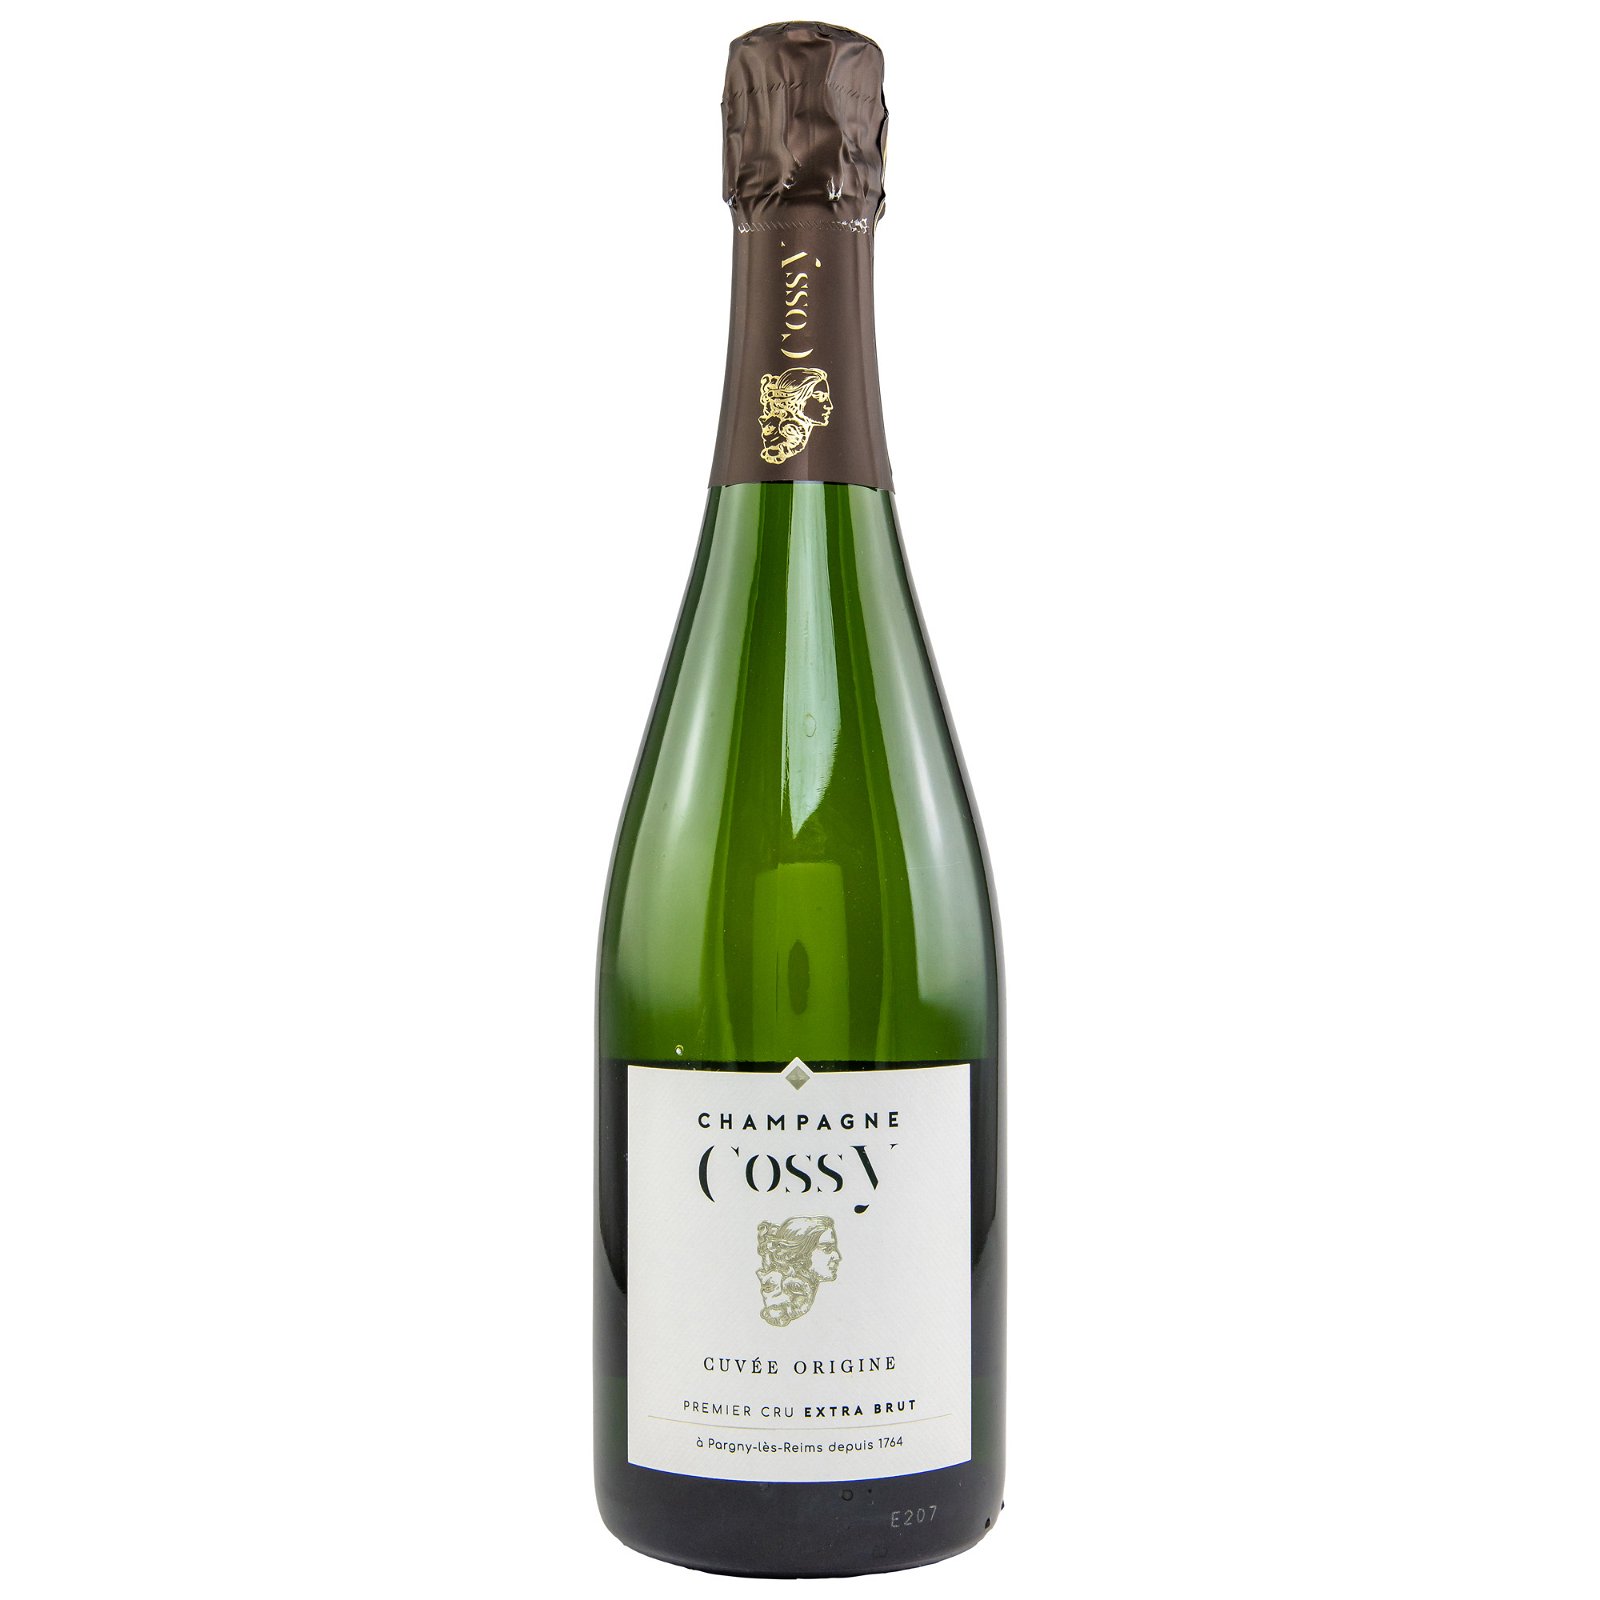 Cossy Cuvée Origine Premier Cru Extra Brut Champagner